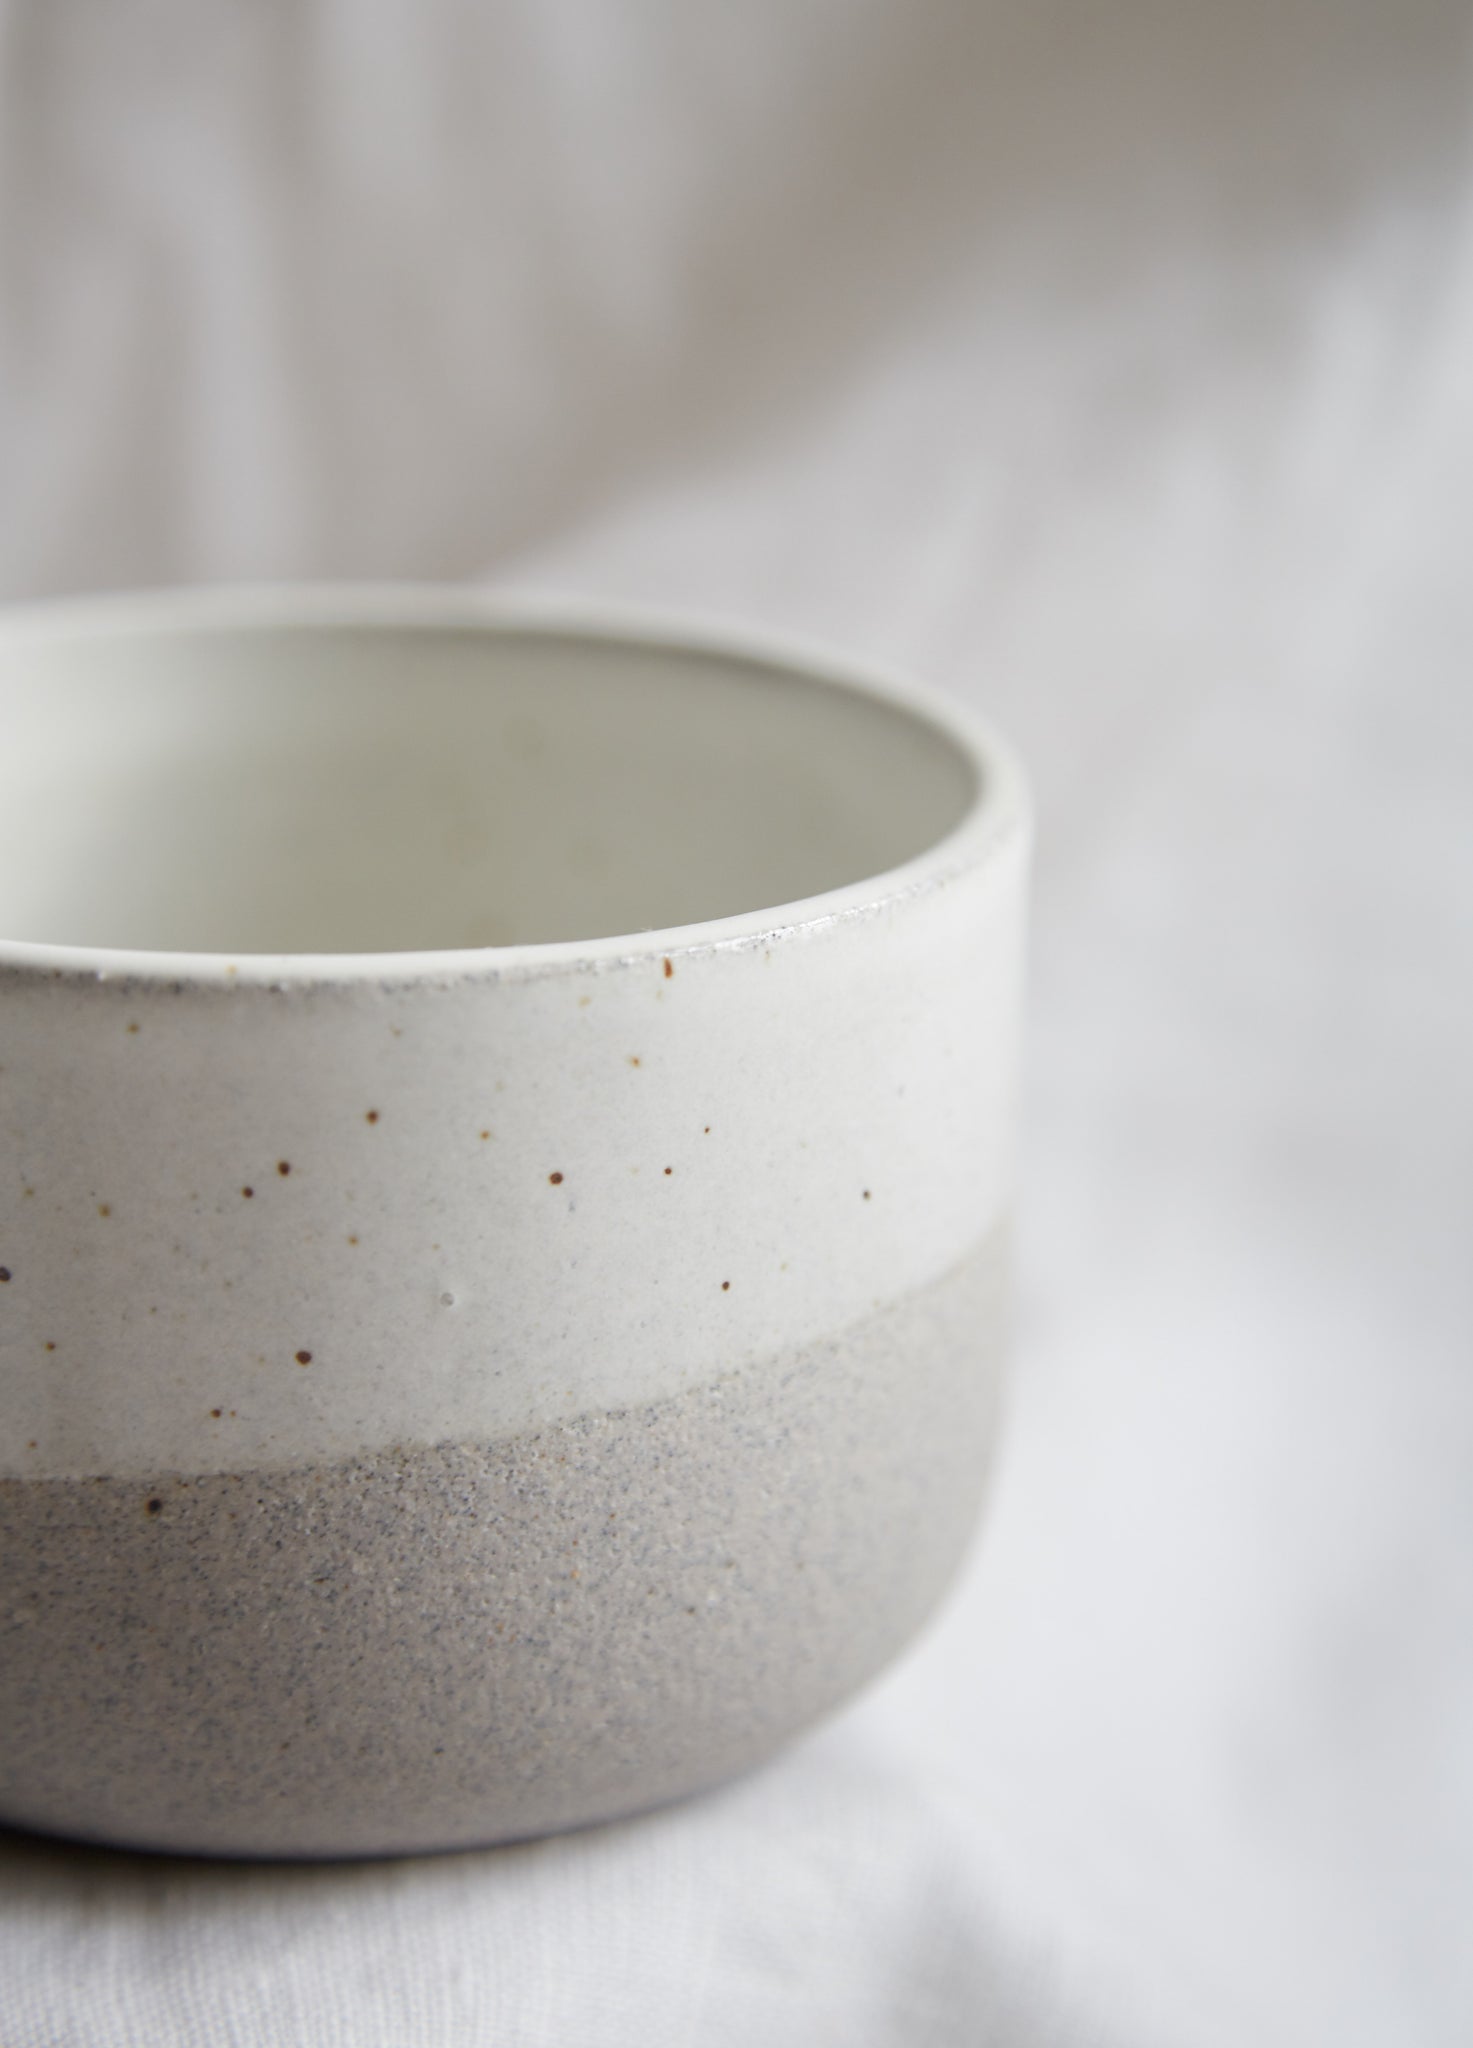 Humble Ceramics Alder Bowl